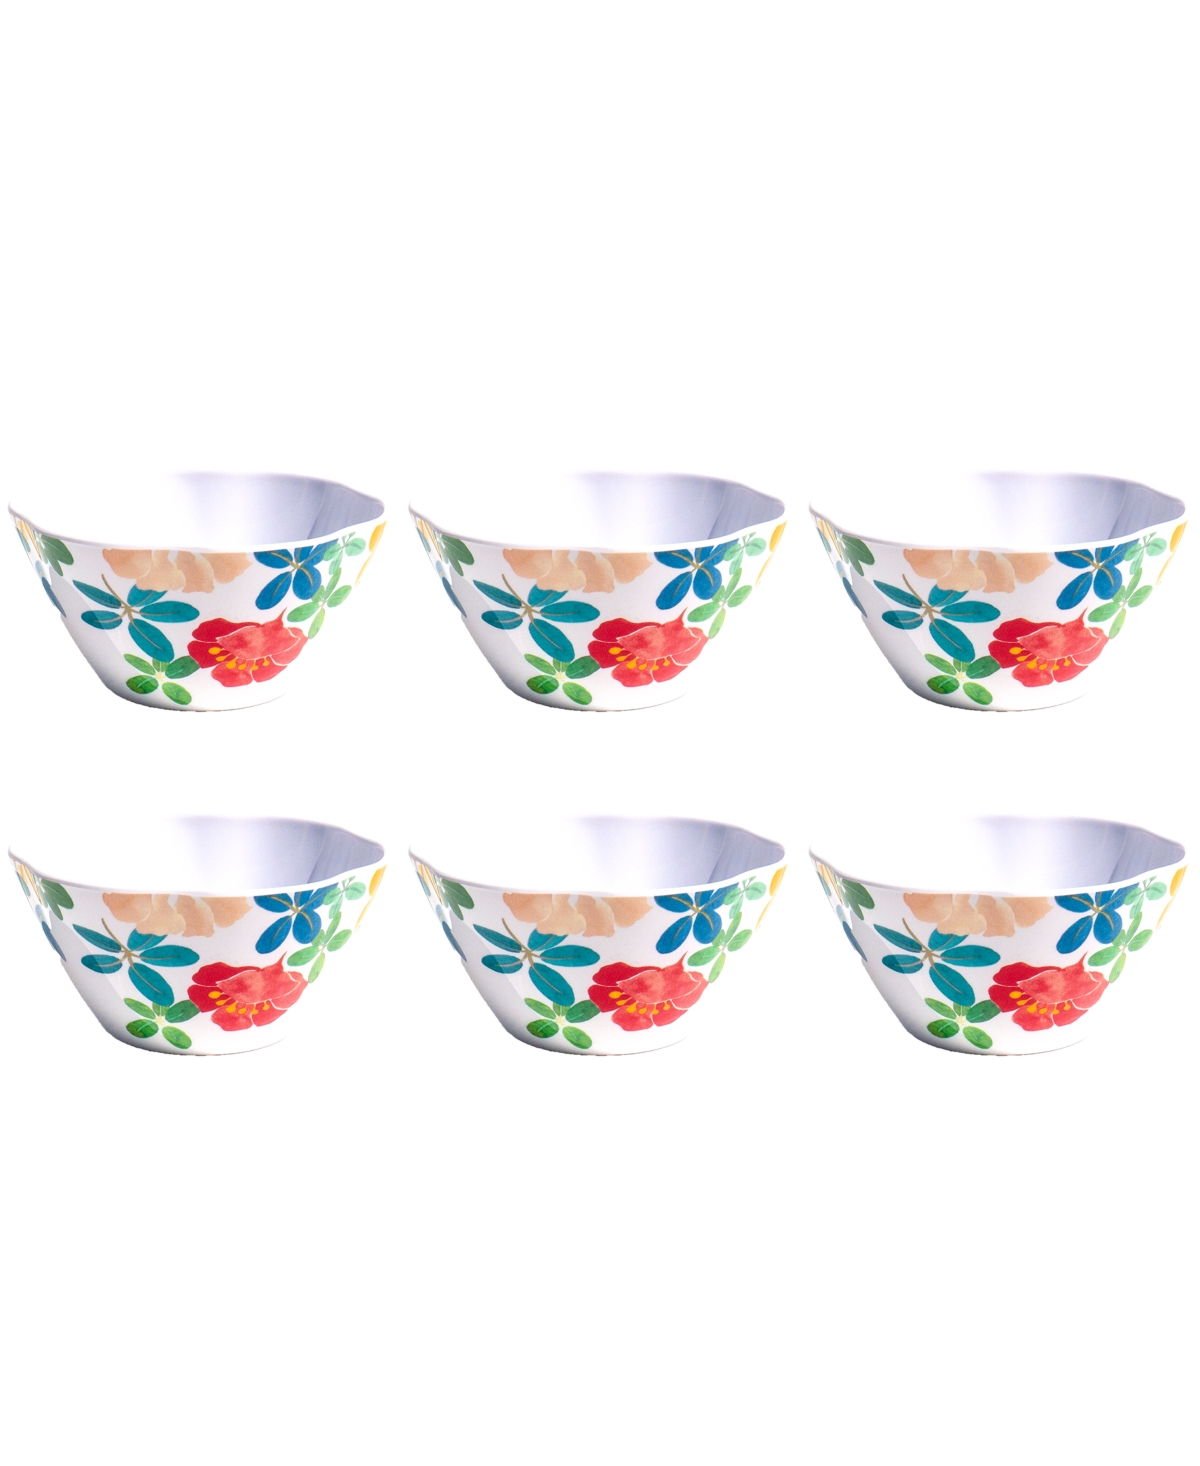 Audrey Floral 6" Cereal Bowls 24 oz, Set of 6, Service for 6 - Multi